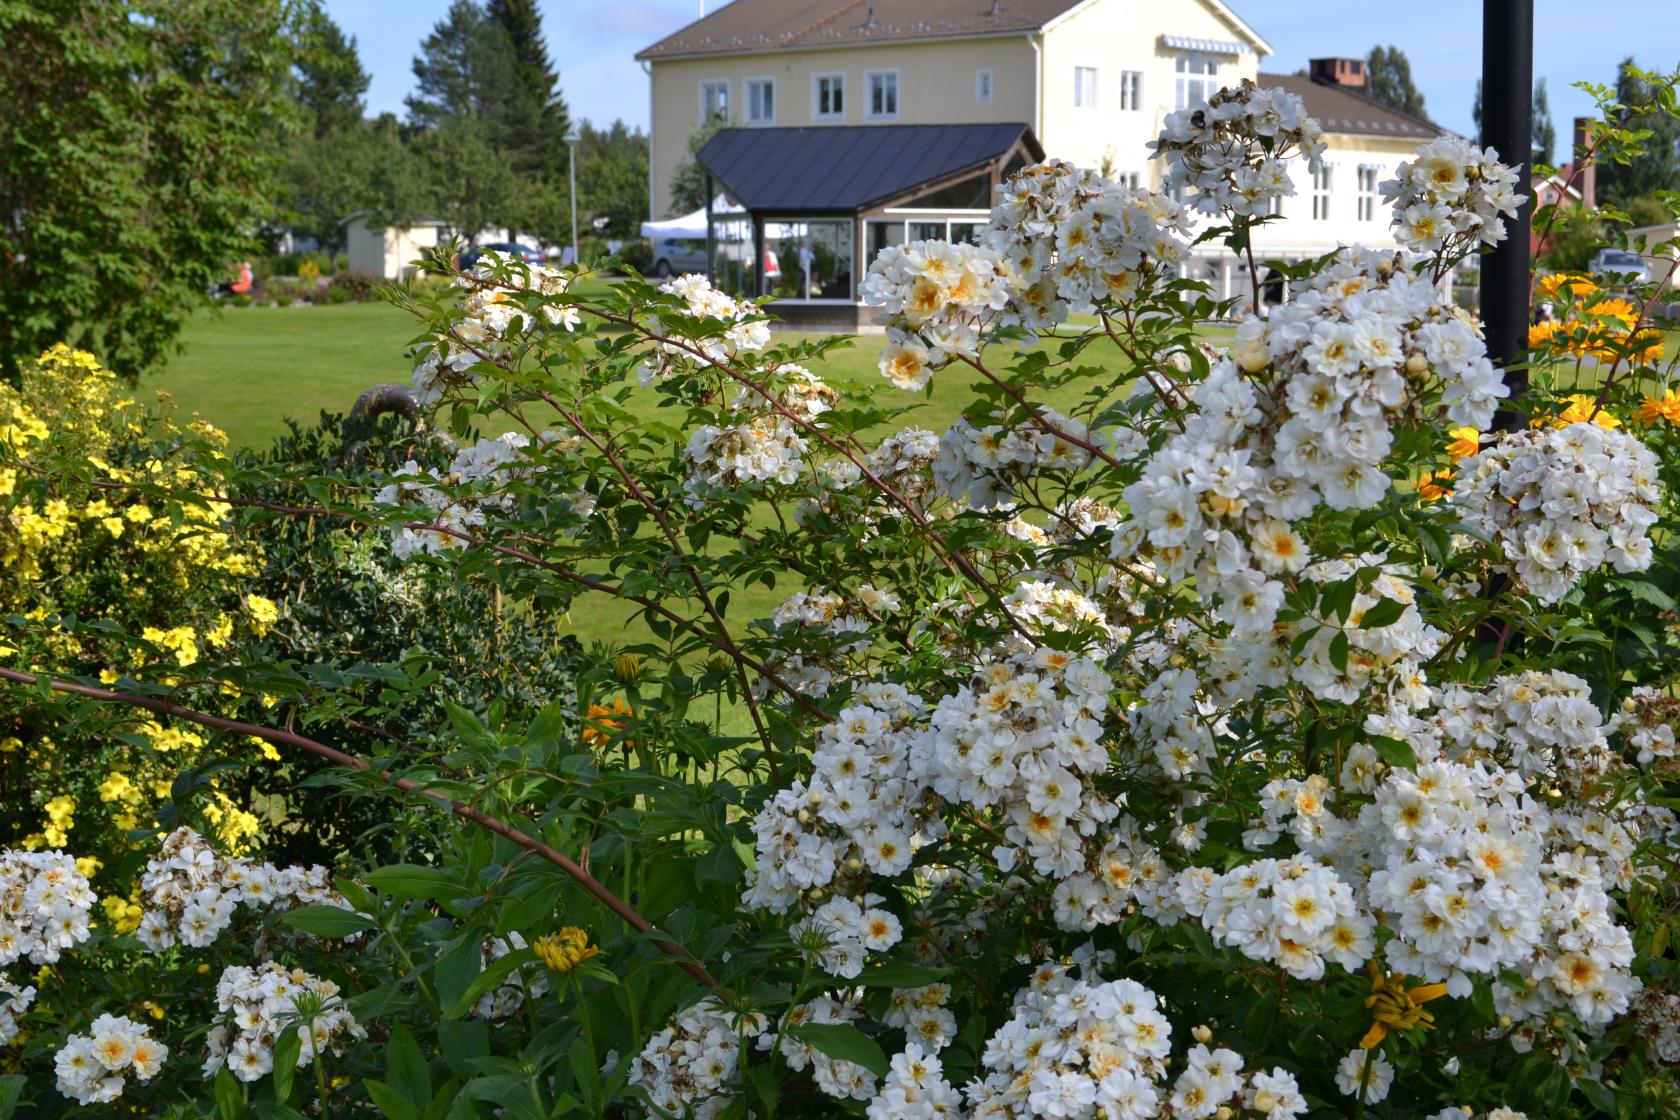 Buskar med vita och gula blommor i en trädgård. Ett stort hus i bakgrunden.